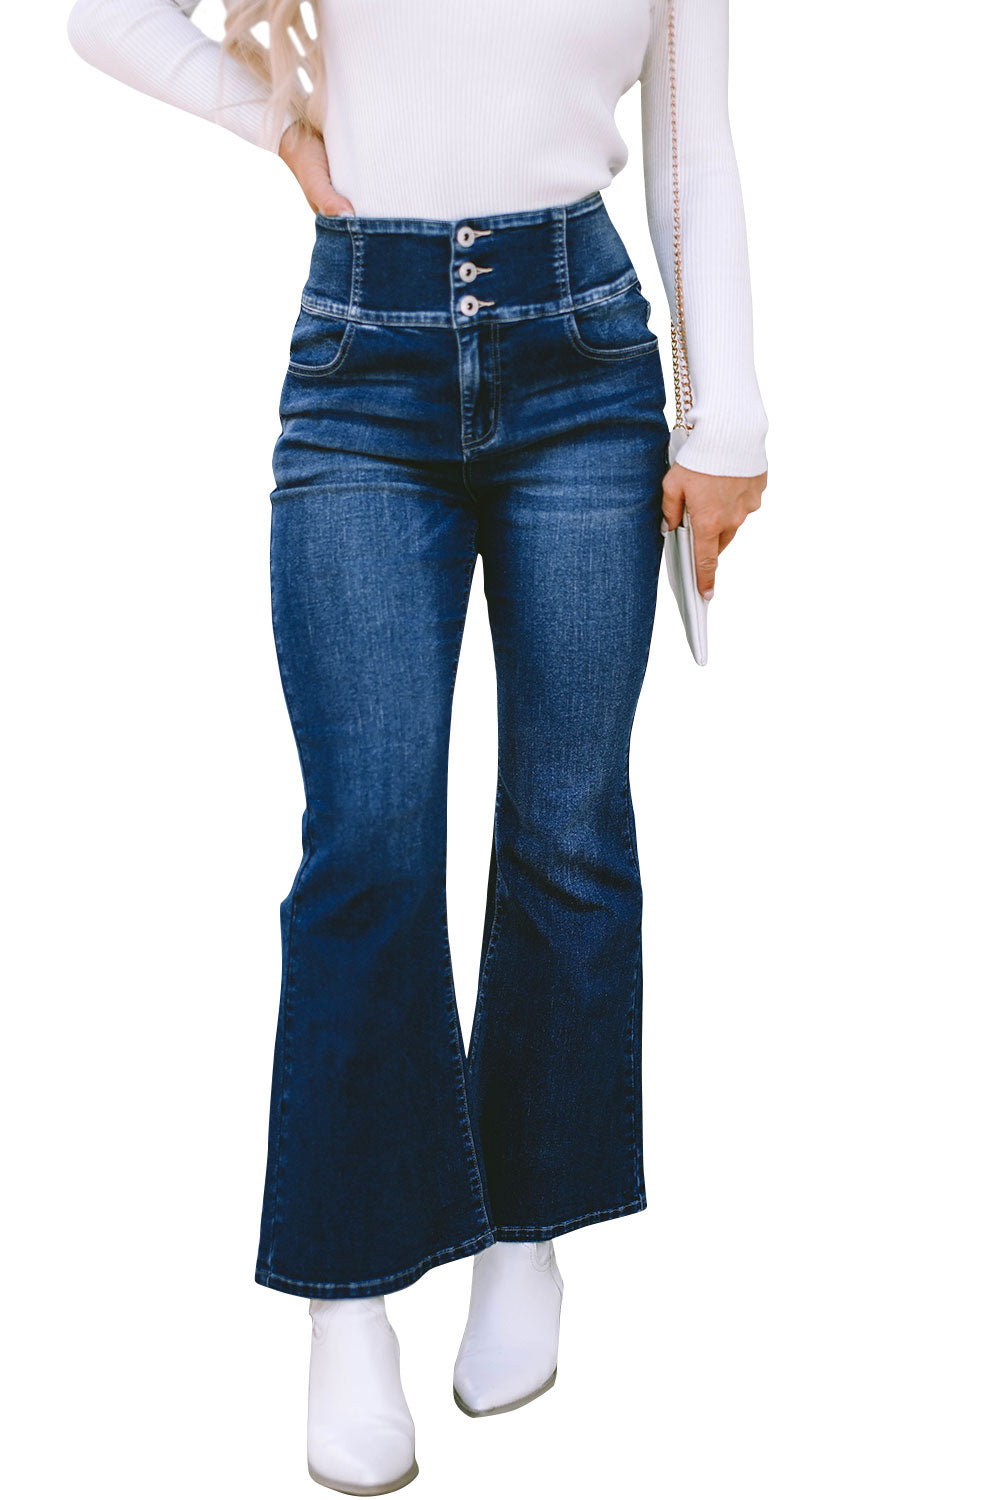 Blaue Jeans mit Knöpfen und elastischem, breitem Bund hinten